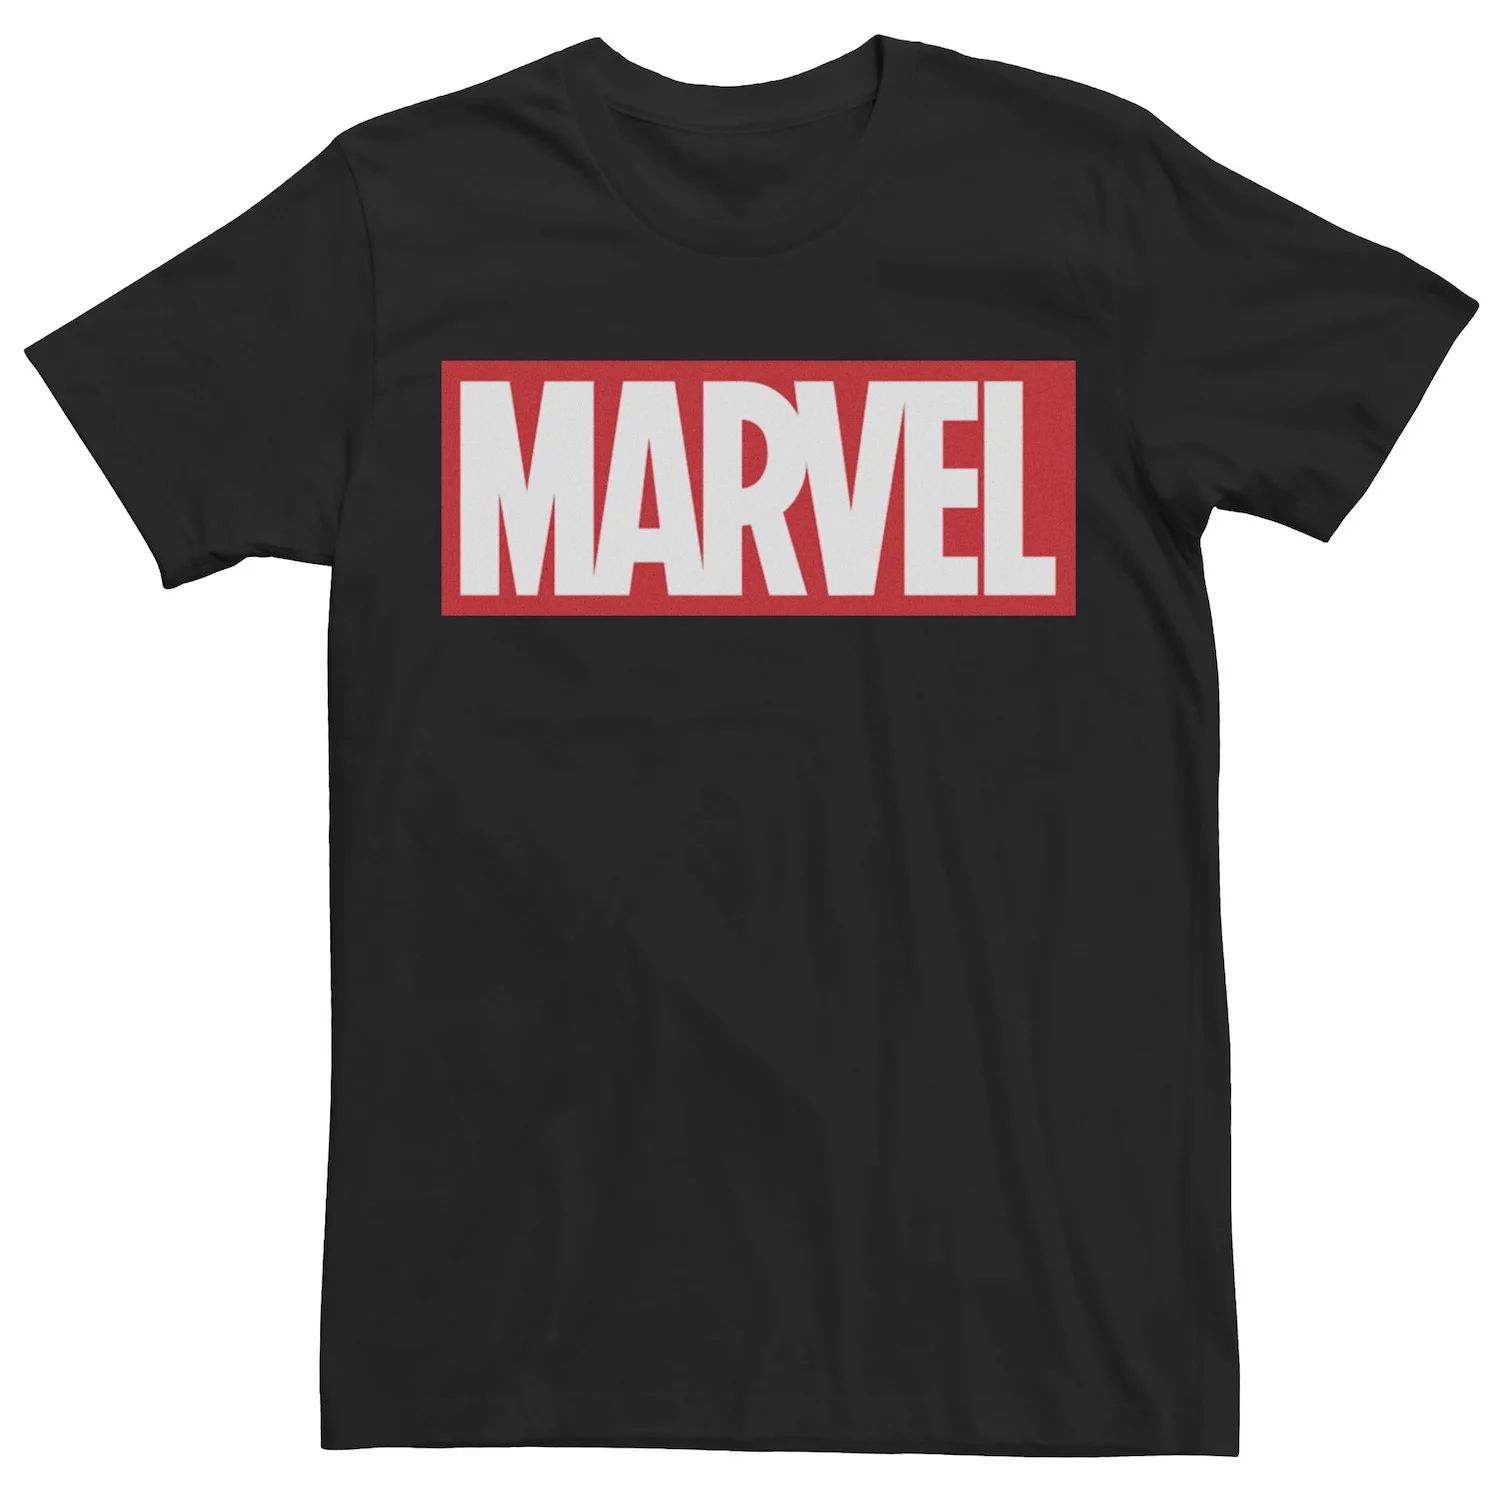 Мужская классическая футболка с ярким логотипом Marvel